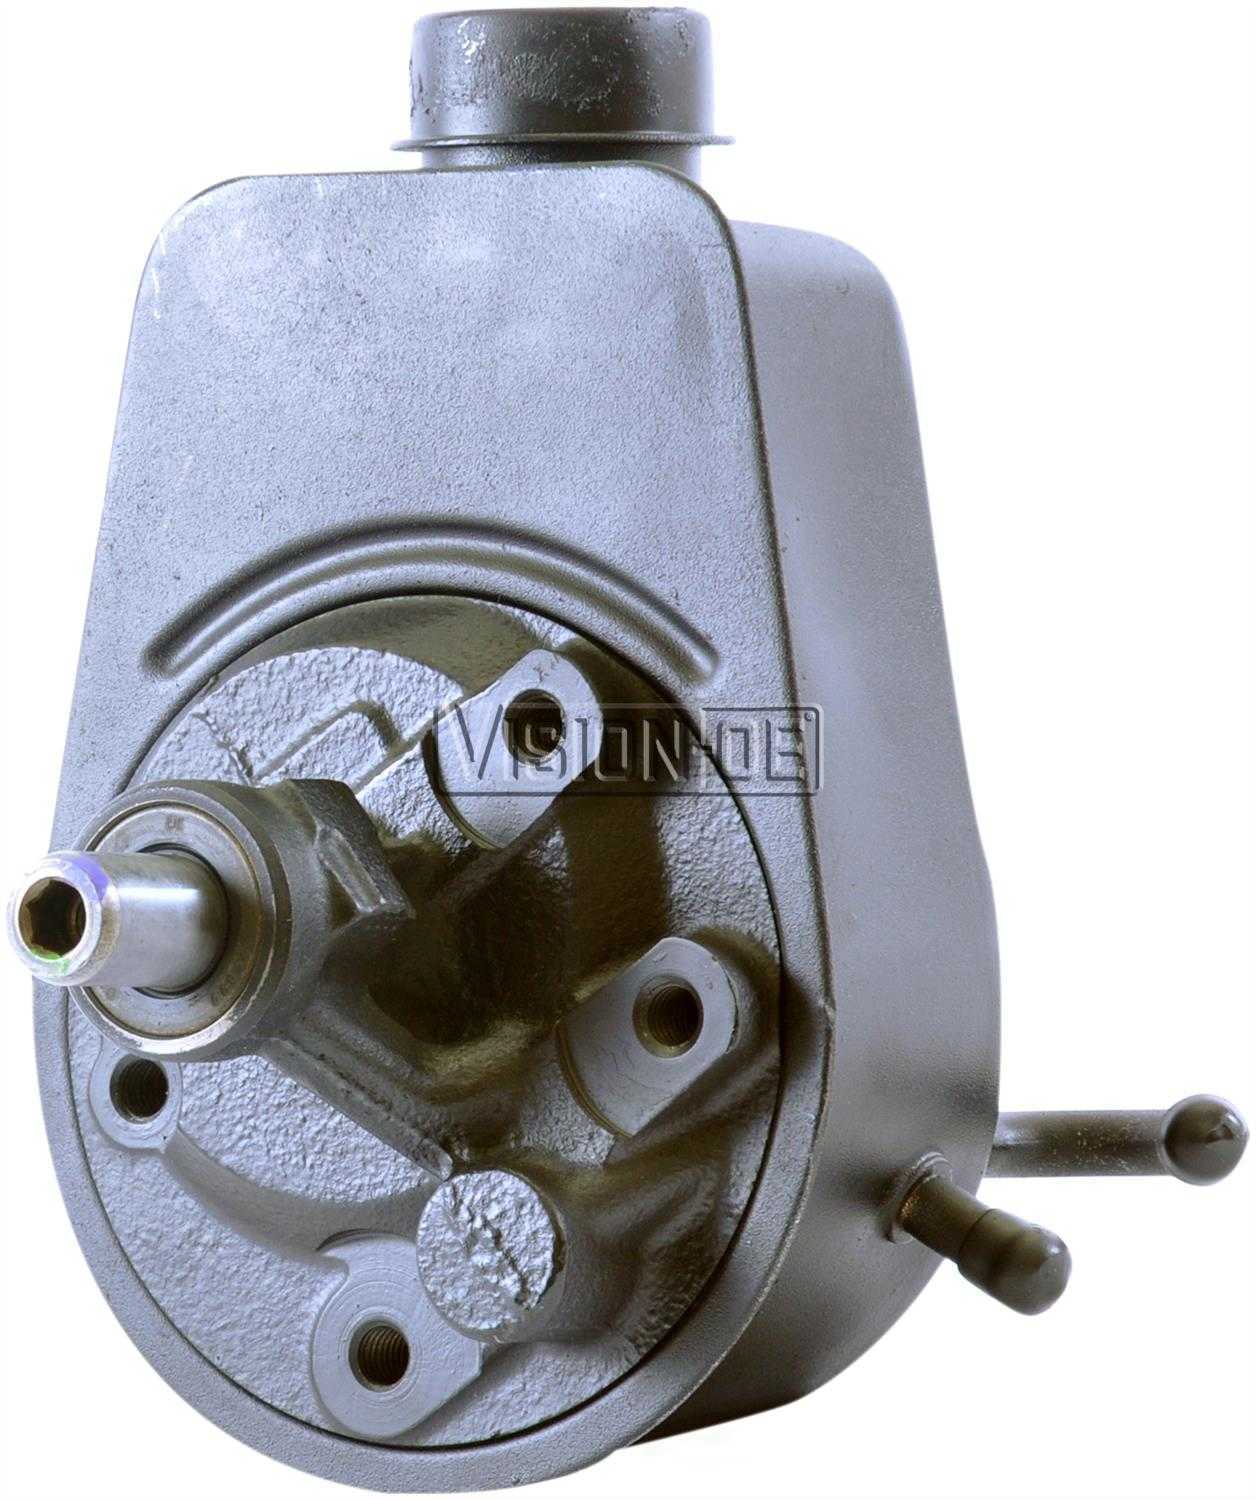 VISION-OE - Reman Power Steering Pump - VOE 731-2238